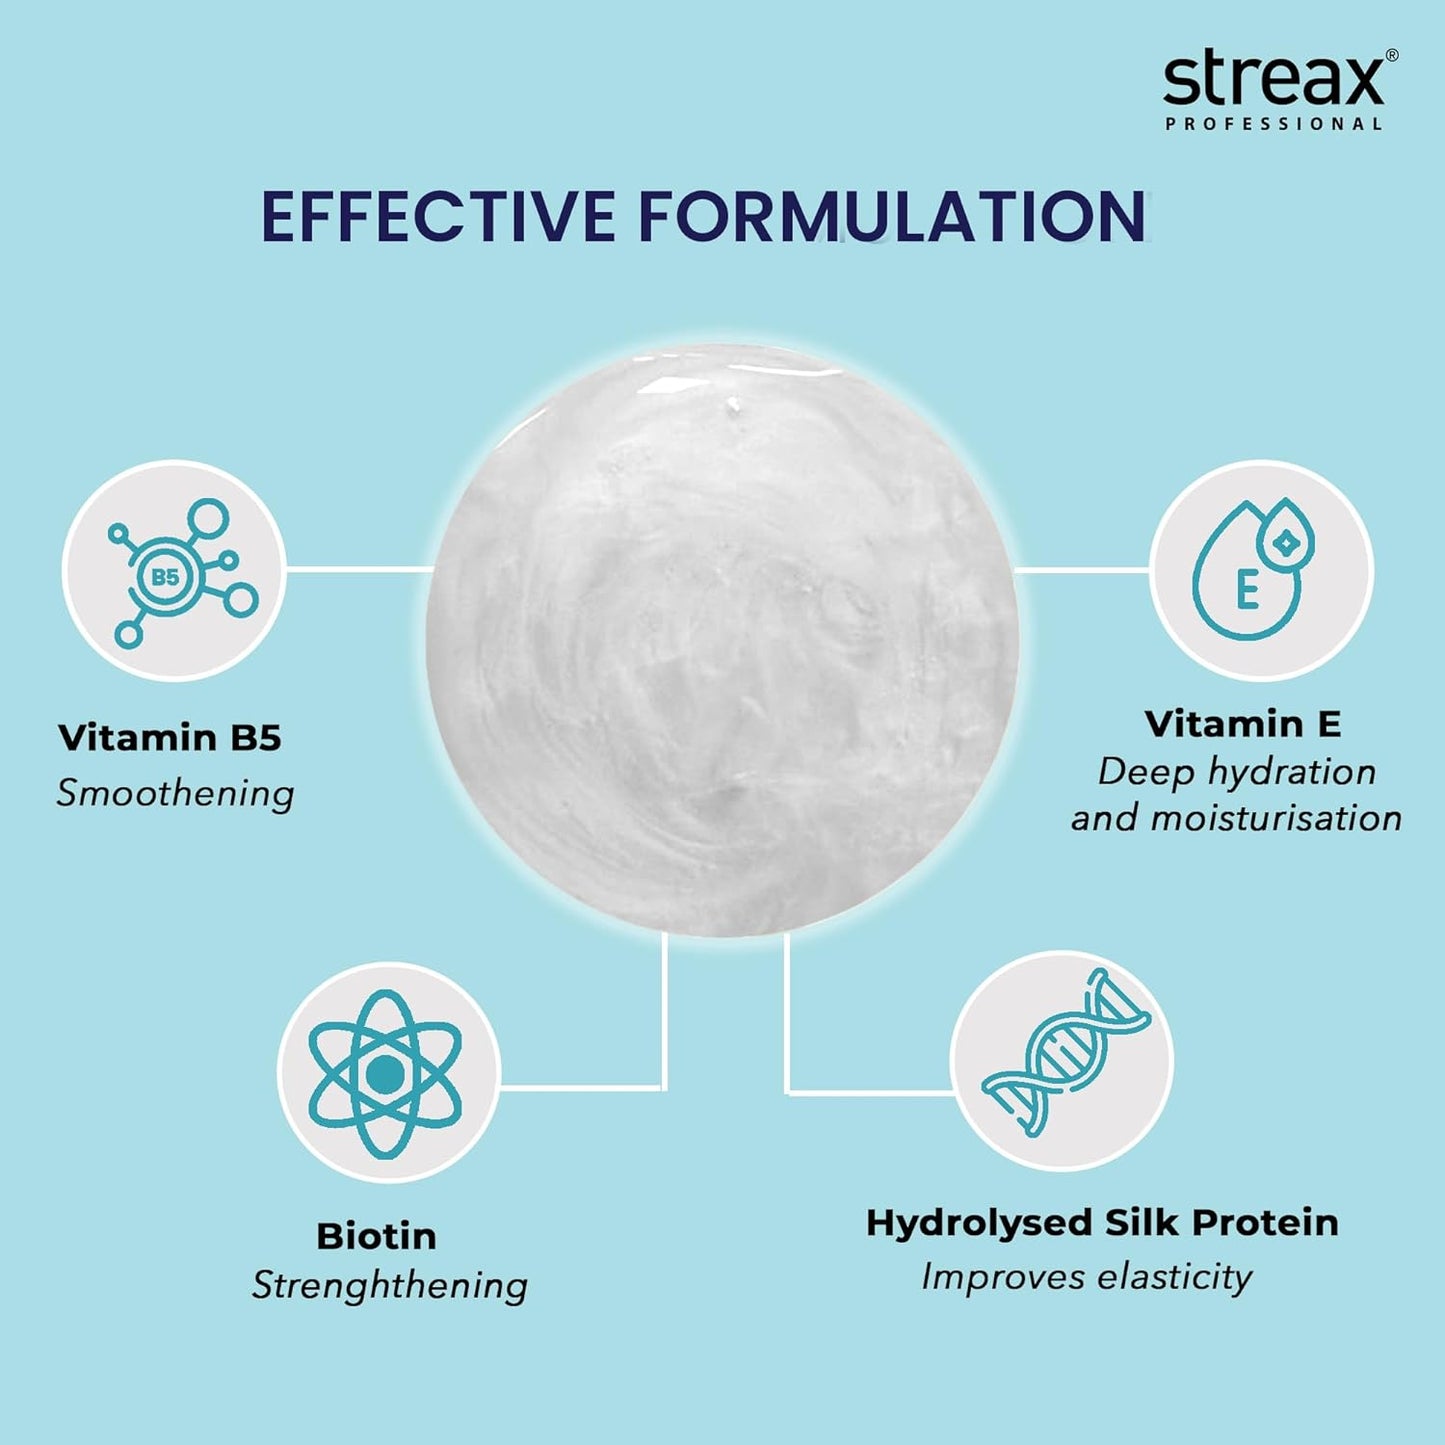 Streax Professional Vitariche Care Smooth & Shine Shampoo 300ml  from Streax Professional